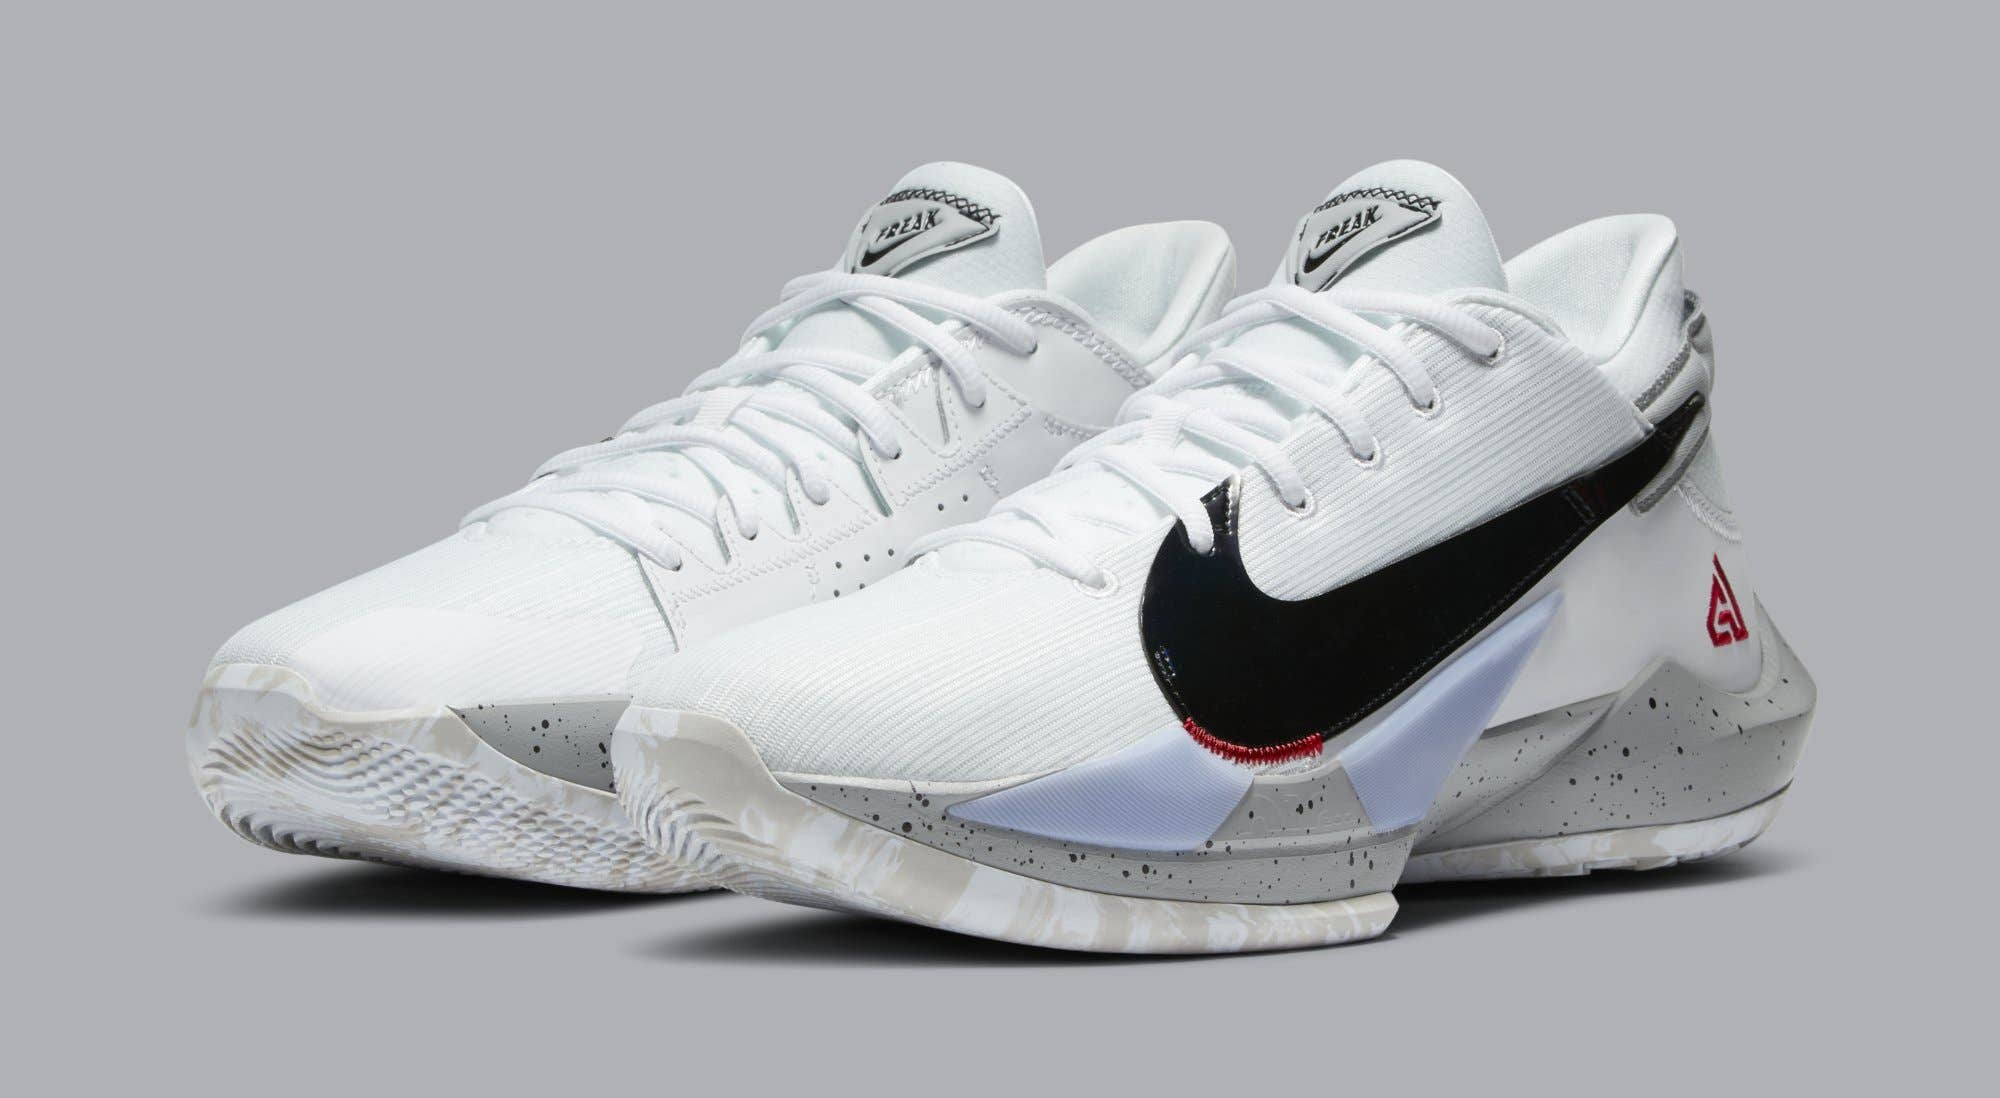 Nike Air Zoom Freak 2 'White/Cement' CK5825 100 (Pair)